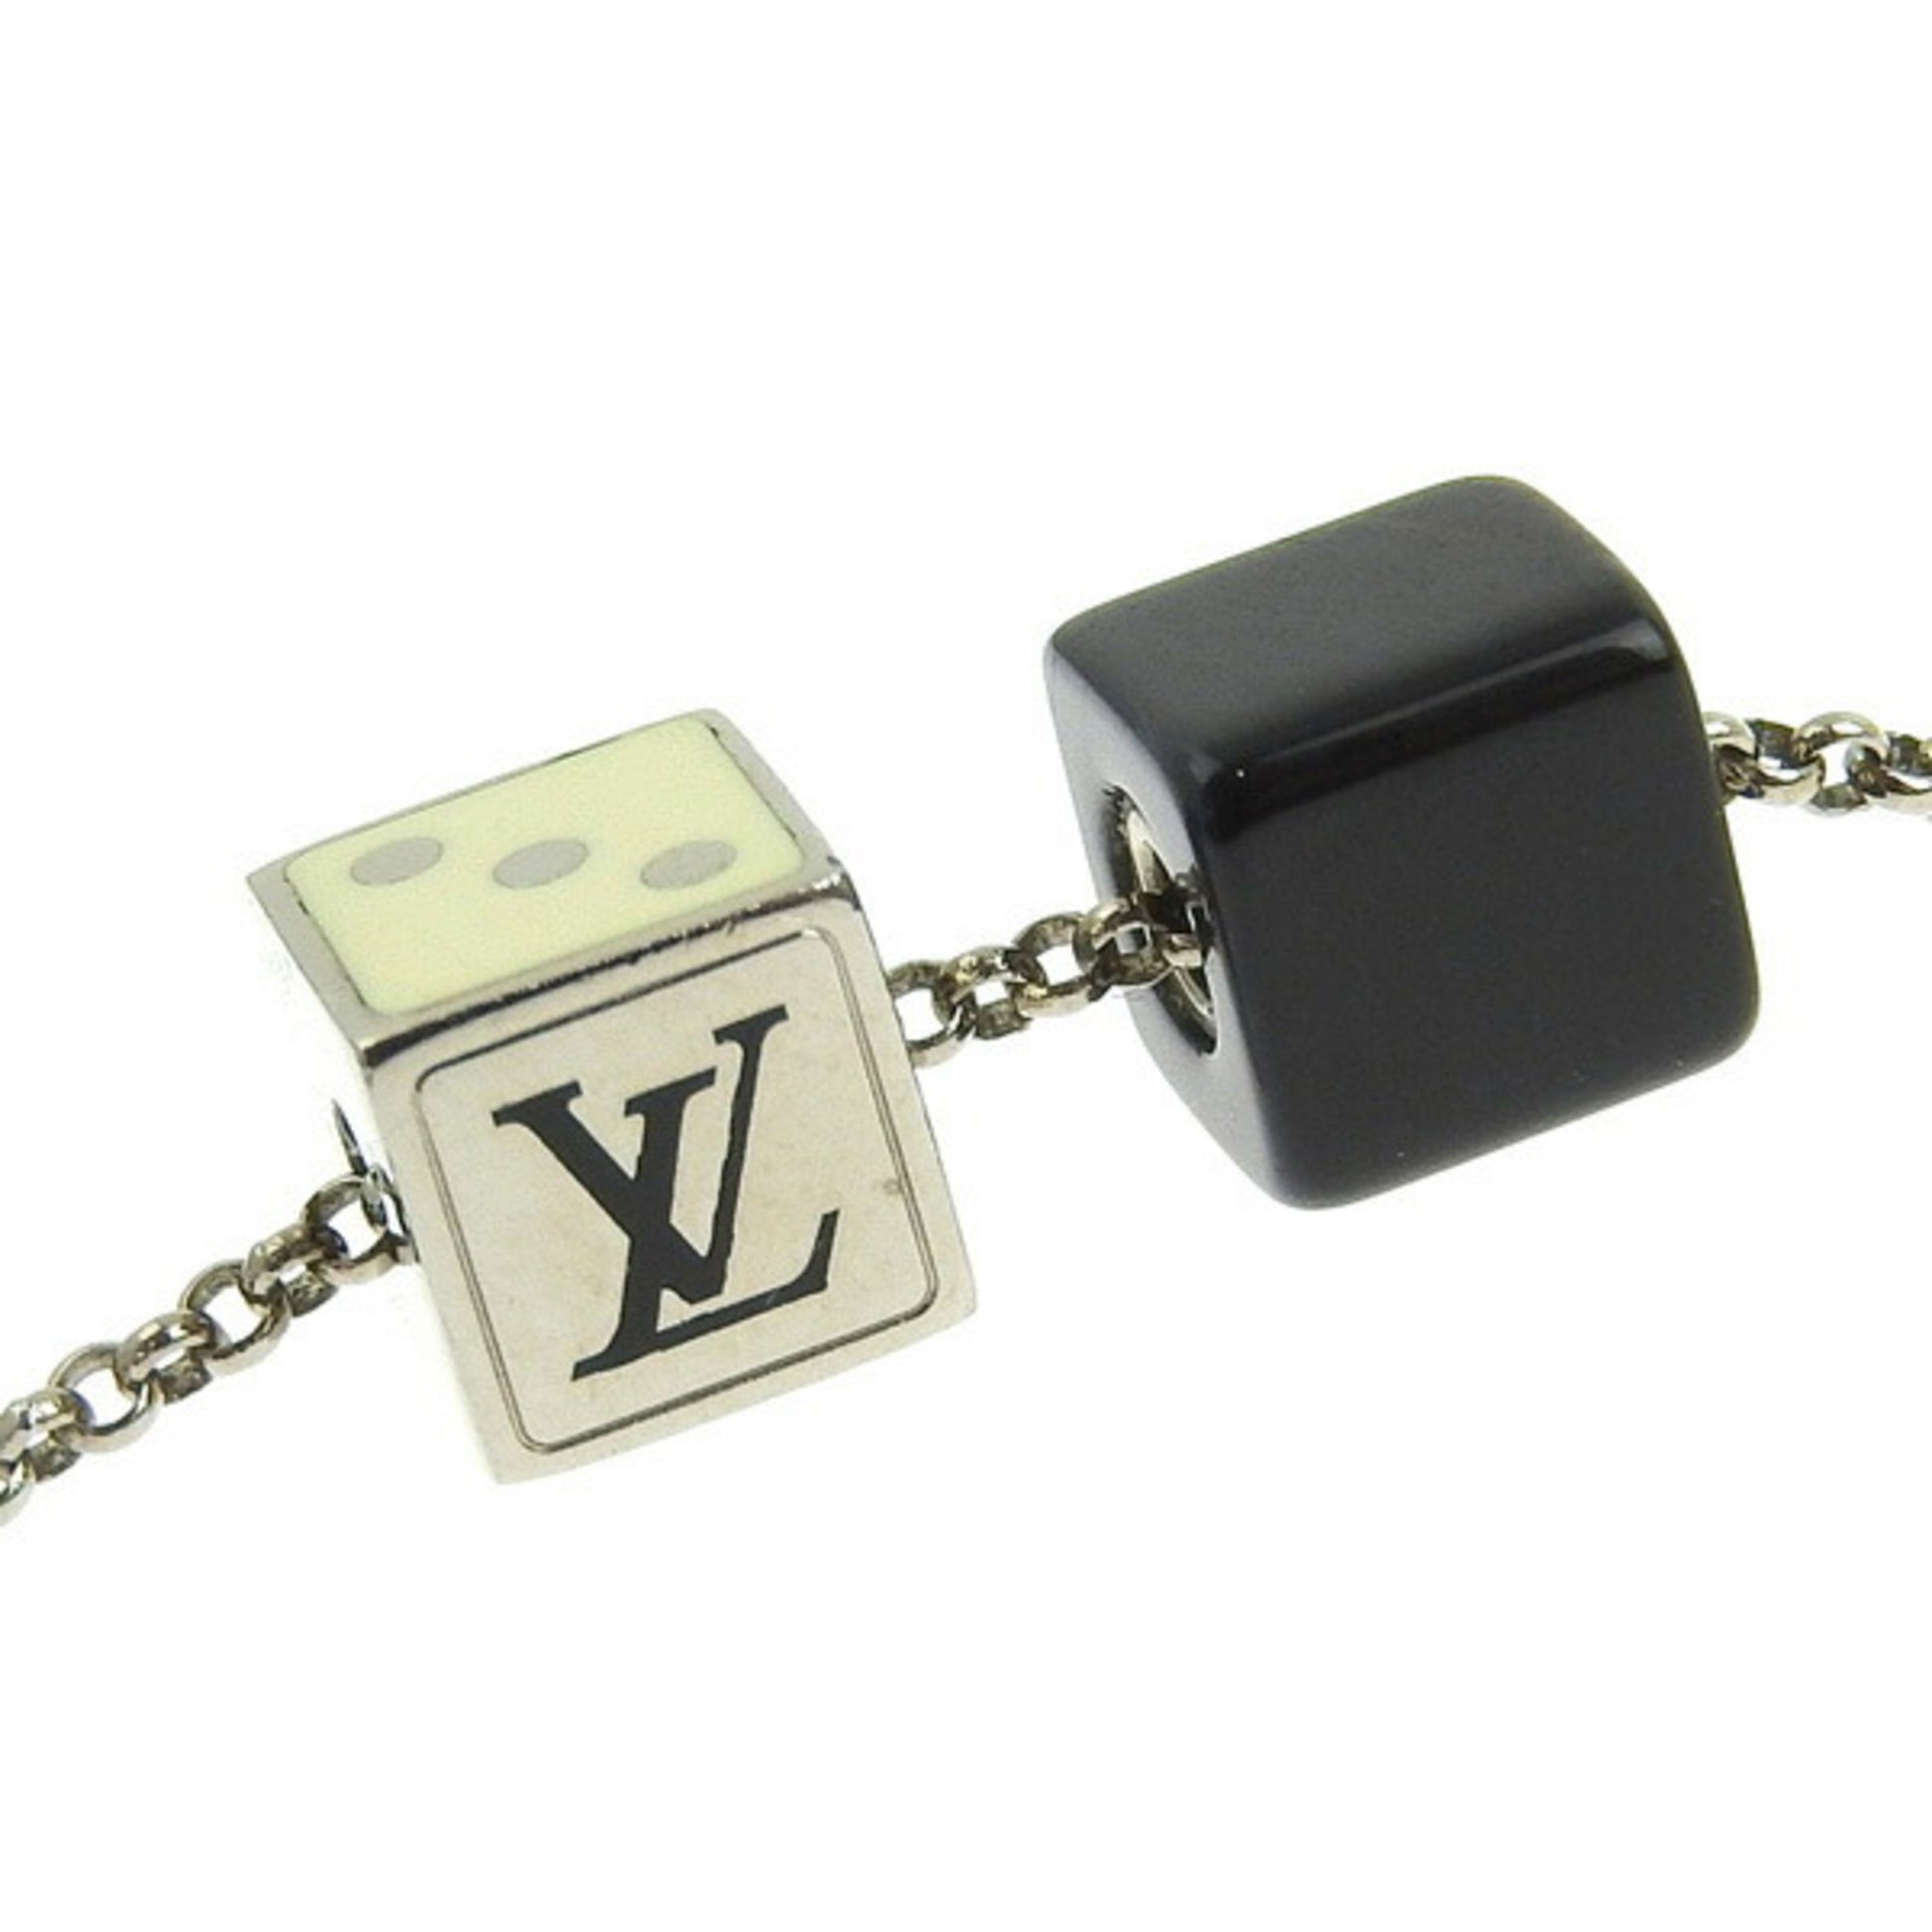 Louis Vuitton Necklace - Black Dice